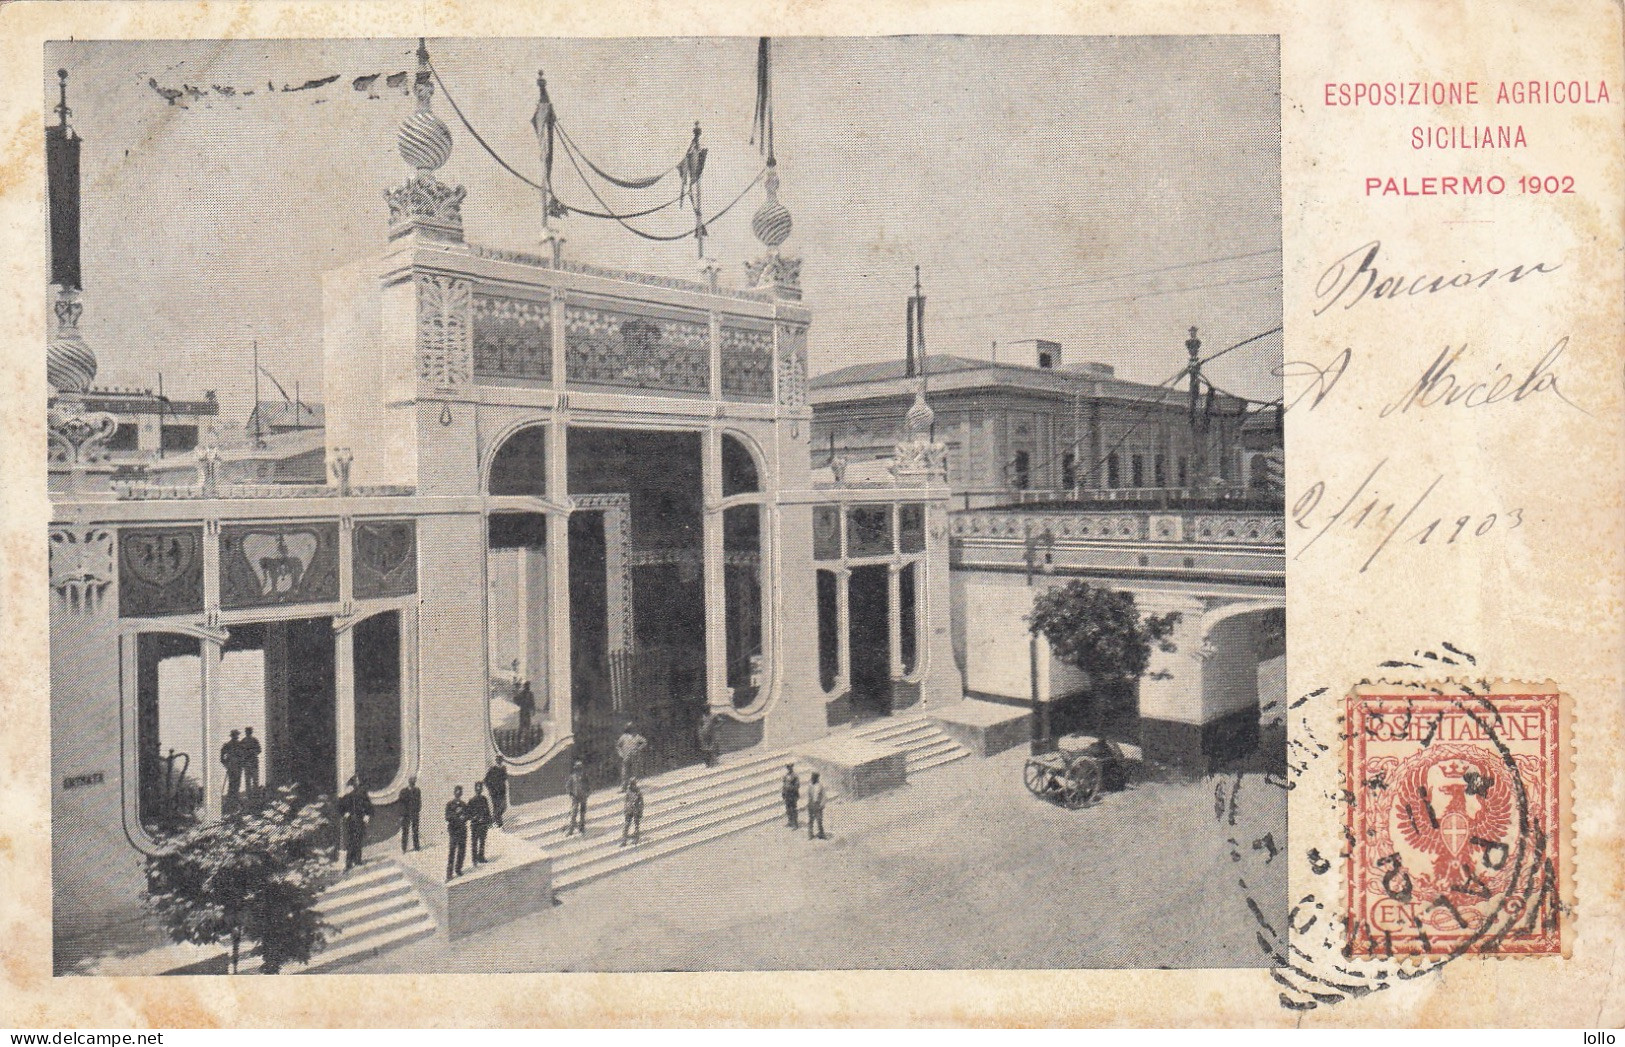 Sicilia  -  Palermo  -  1902  -   Esposizione Agricola Siciliana    - F. Piccolo  -  Viagg -  Bella Animata - Palermo